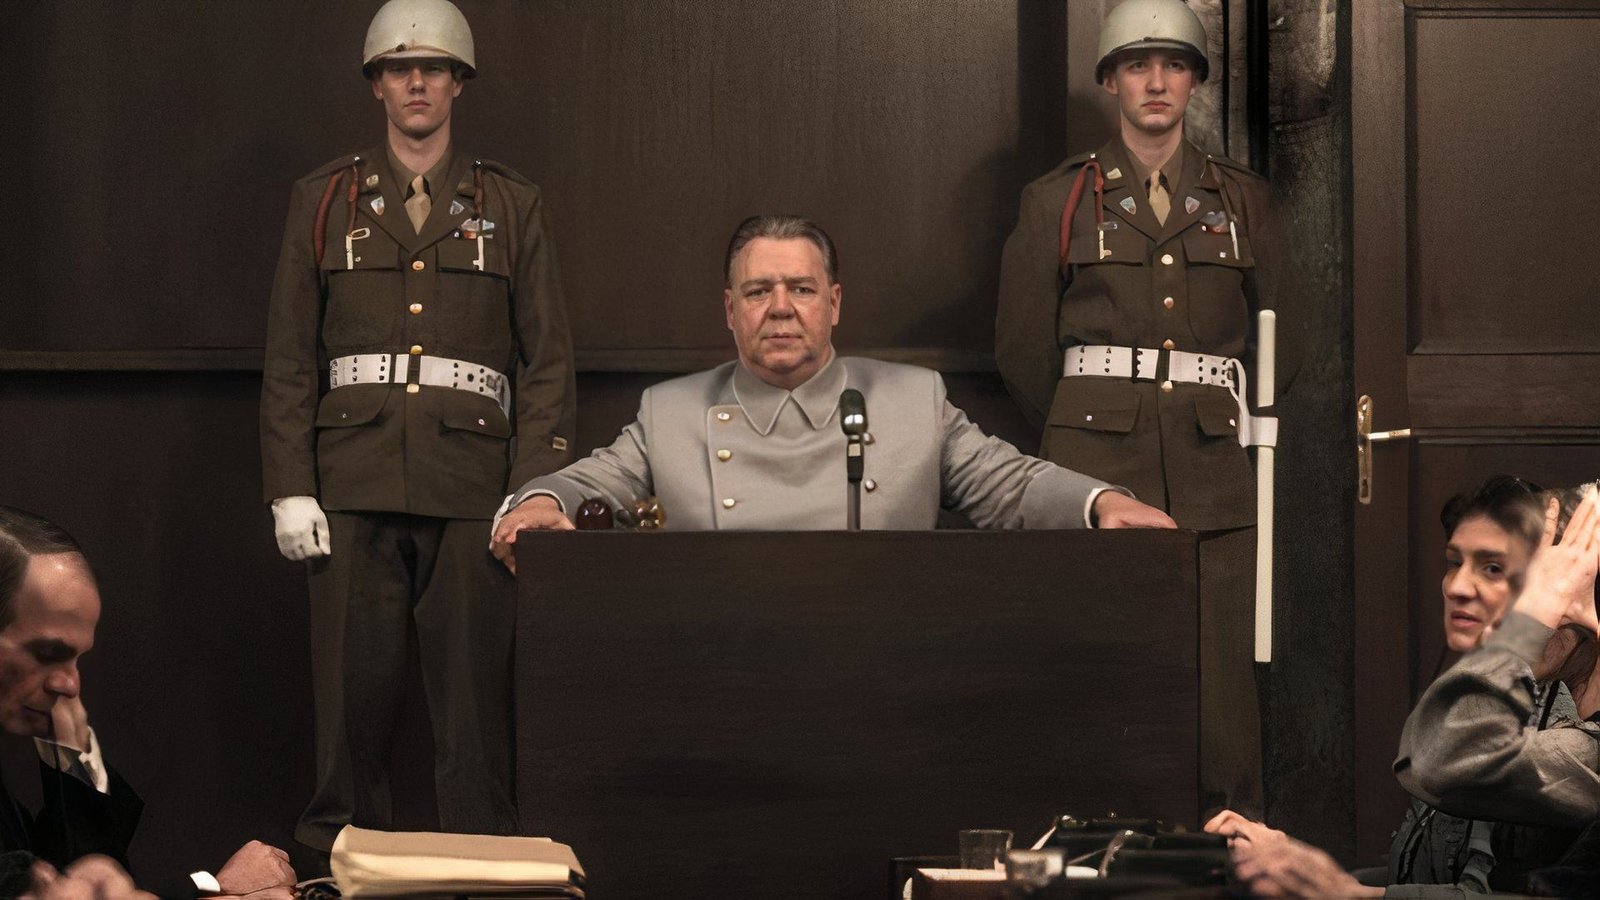 Nuremberg Movie Has Russell Crowe & Rami Malek in Nazi Thriller